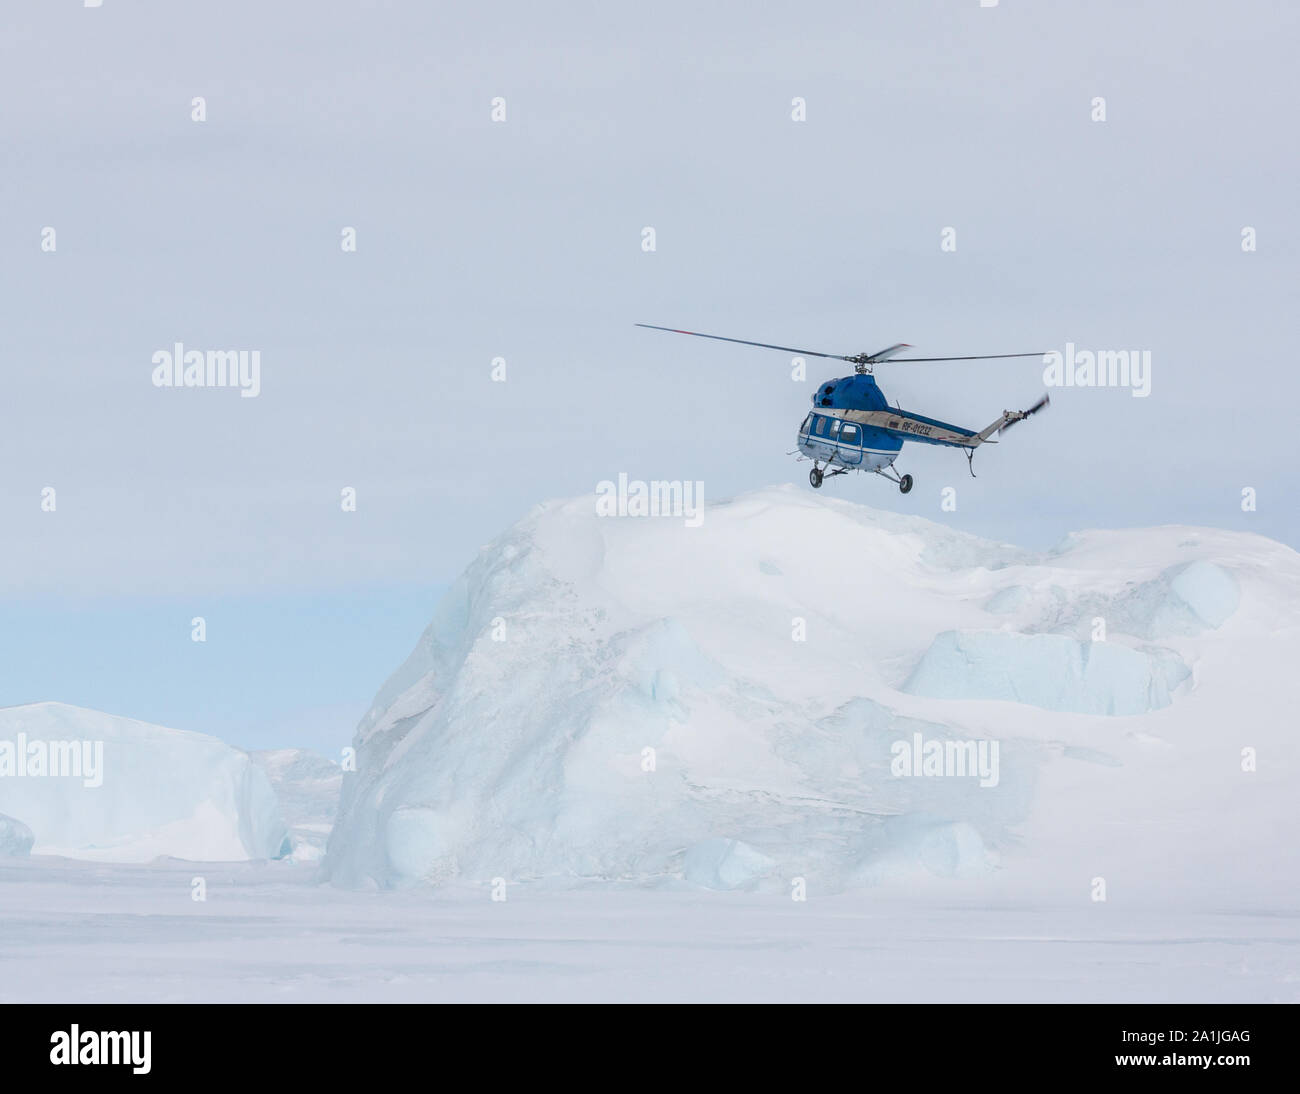 Expédition hélicoptère survolant icebergs piégés dans la glace de mer congelés vers le Snow Hill Island Rookery dans la mer de Weddell, l'Antarctique Banque D'Images